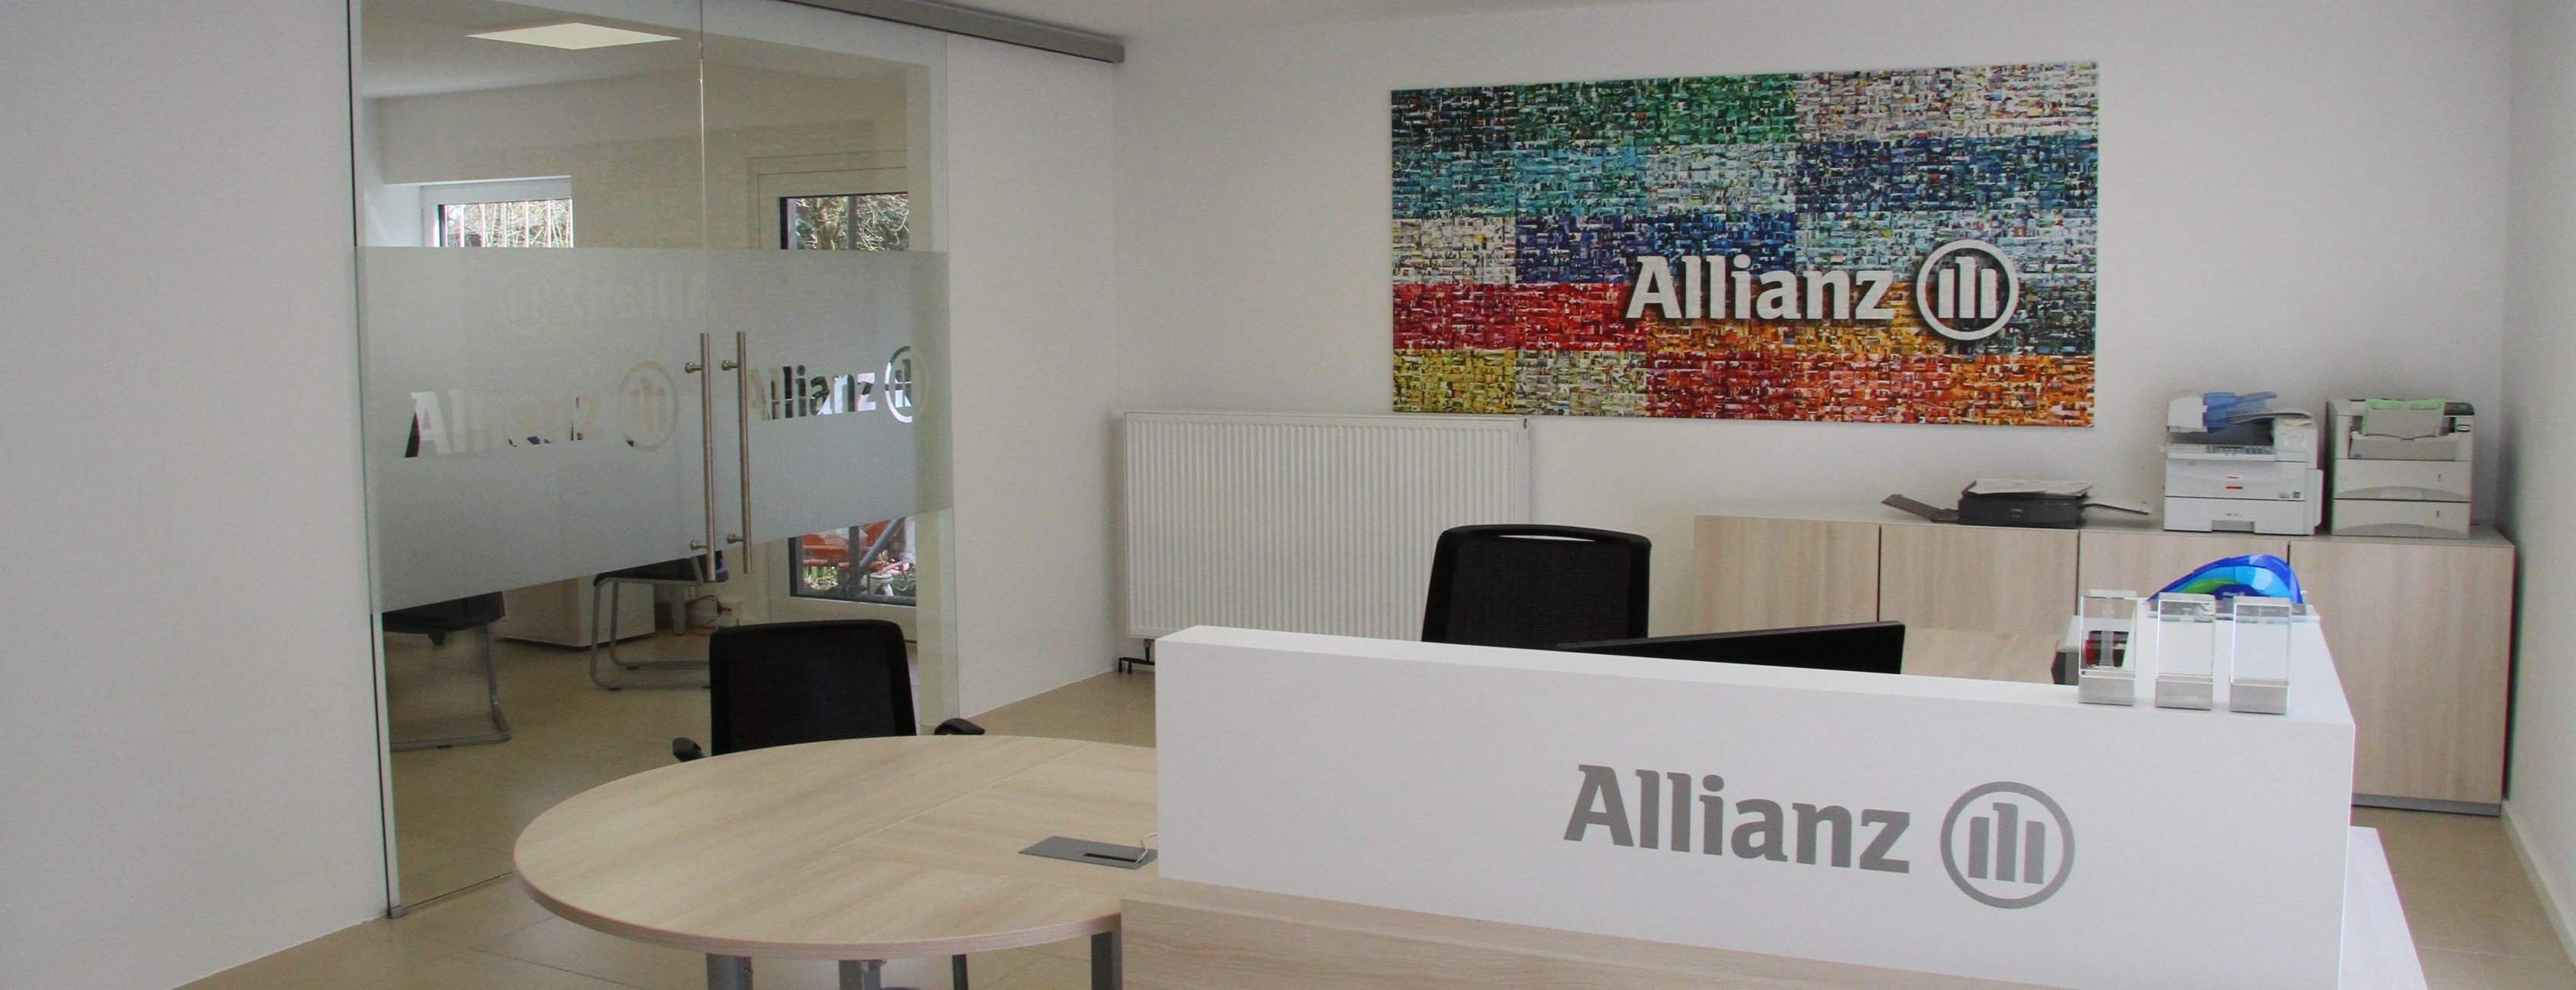 Allianz Versicherung Gregor Wimbauer München - Autoversicherung Geldanlage Versicherung Unfall